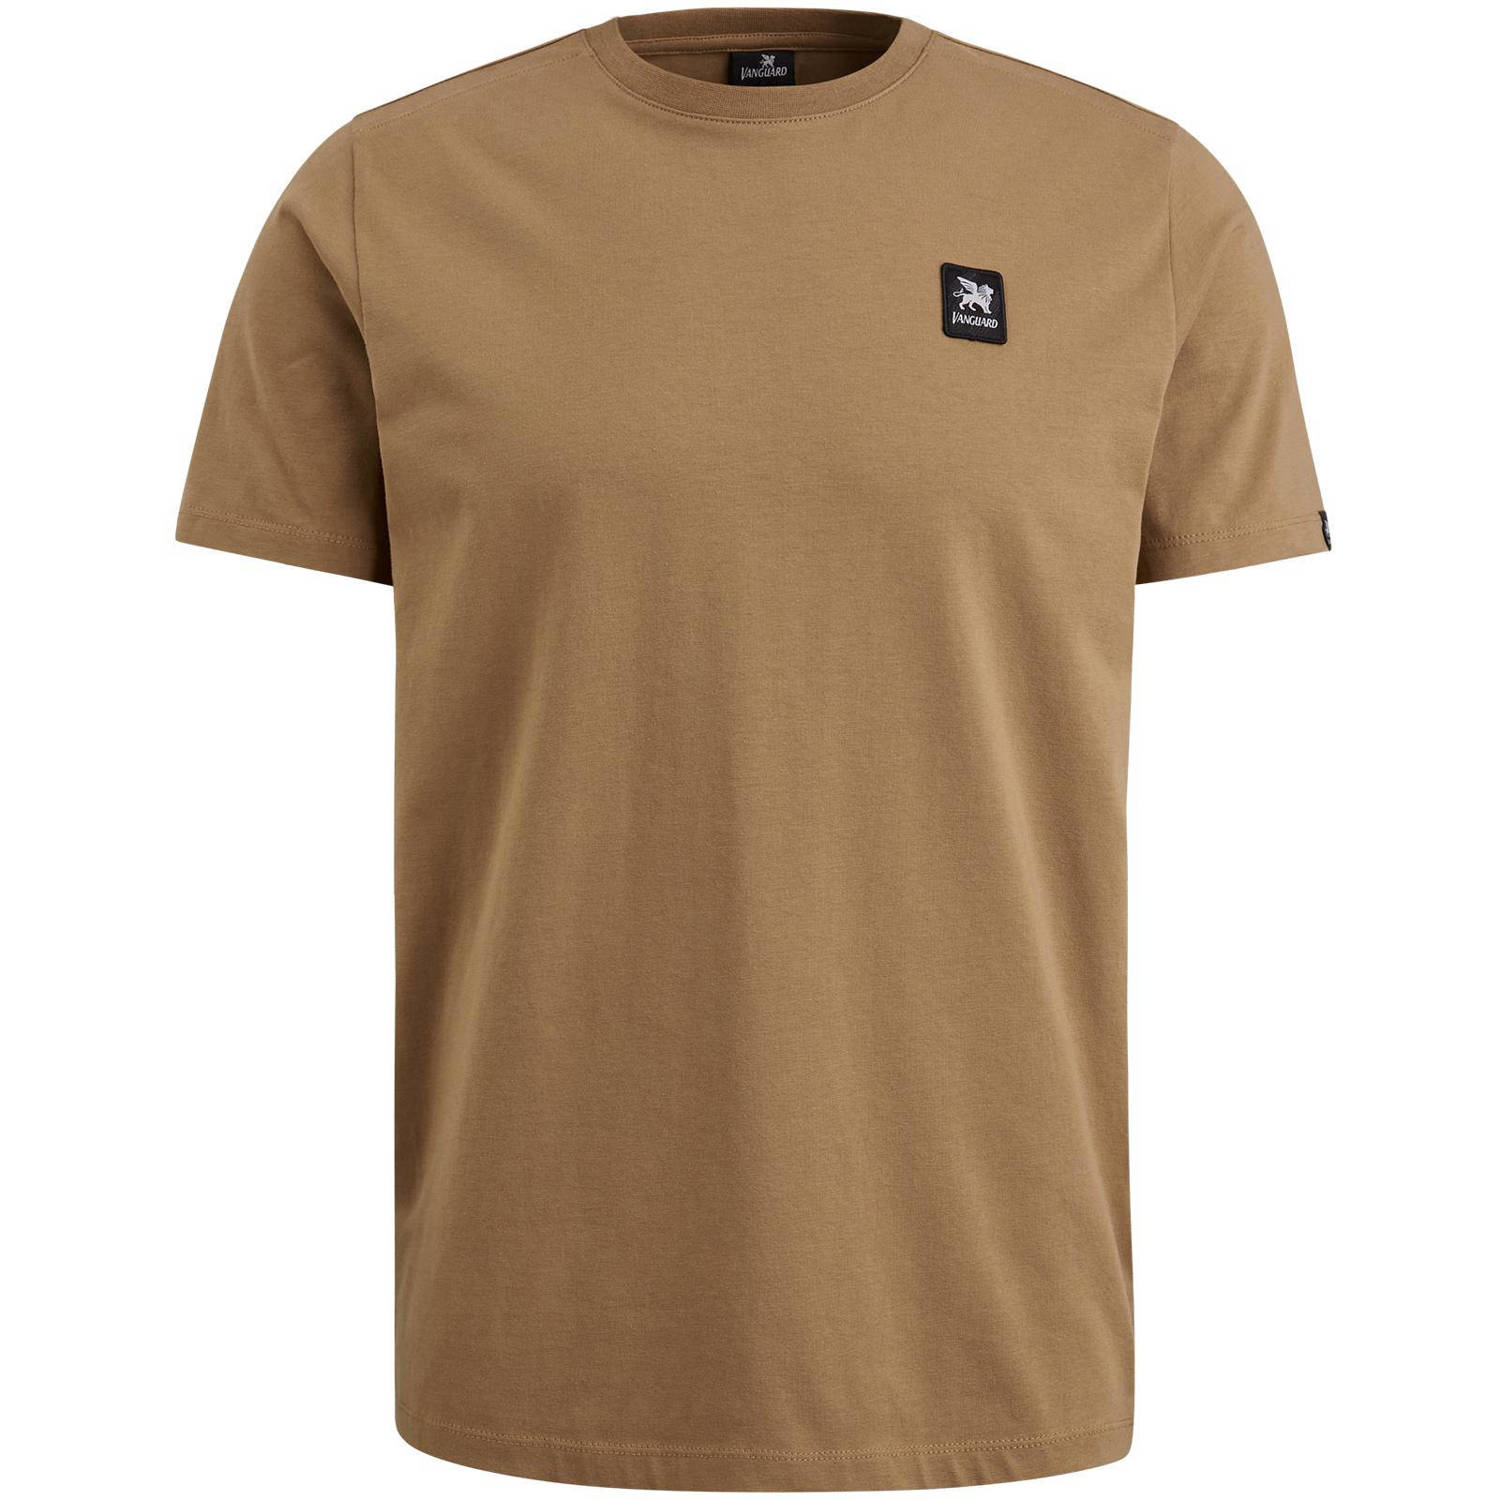 Vanguard T-shirt met logo bruin